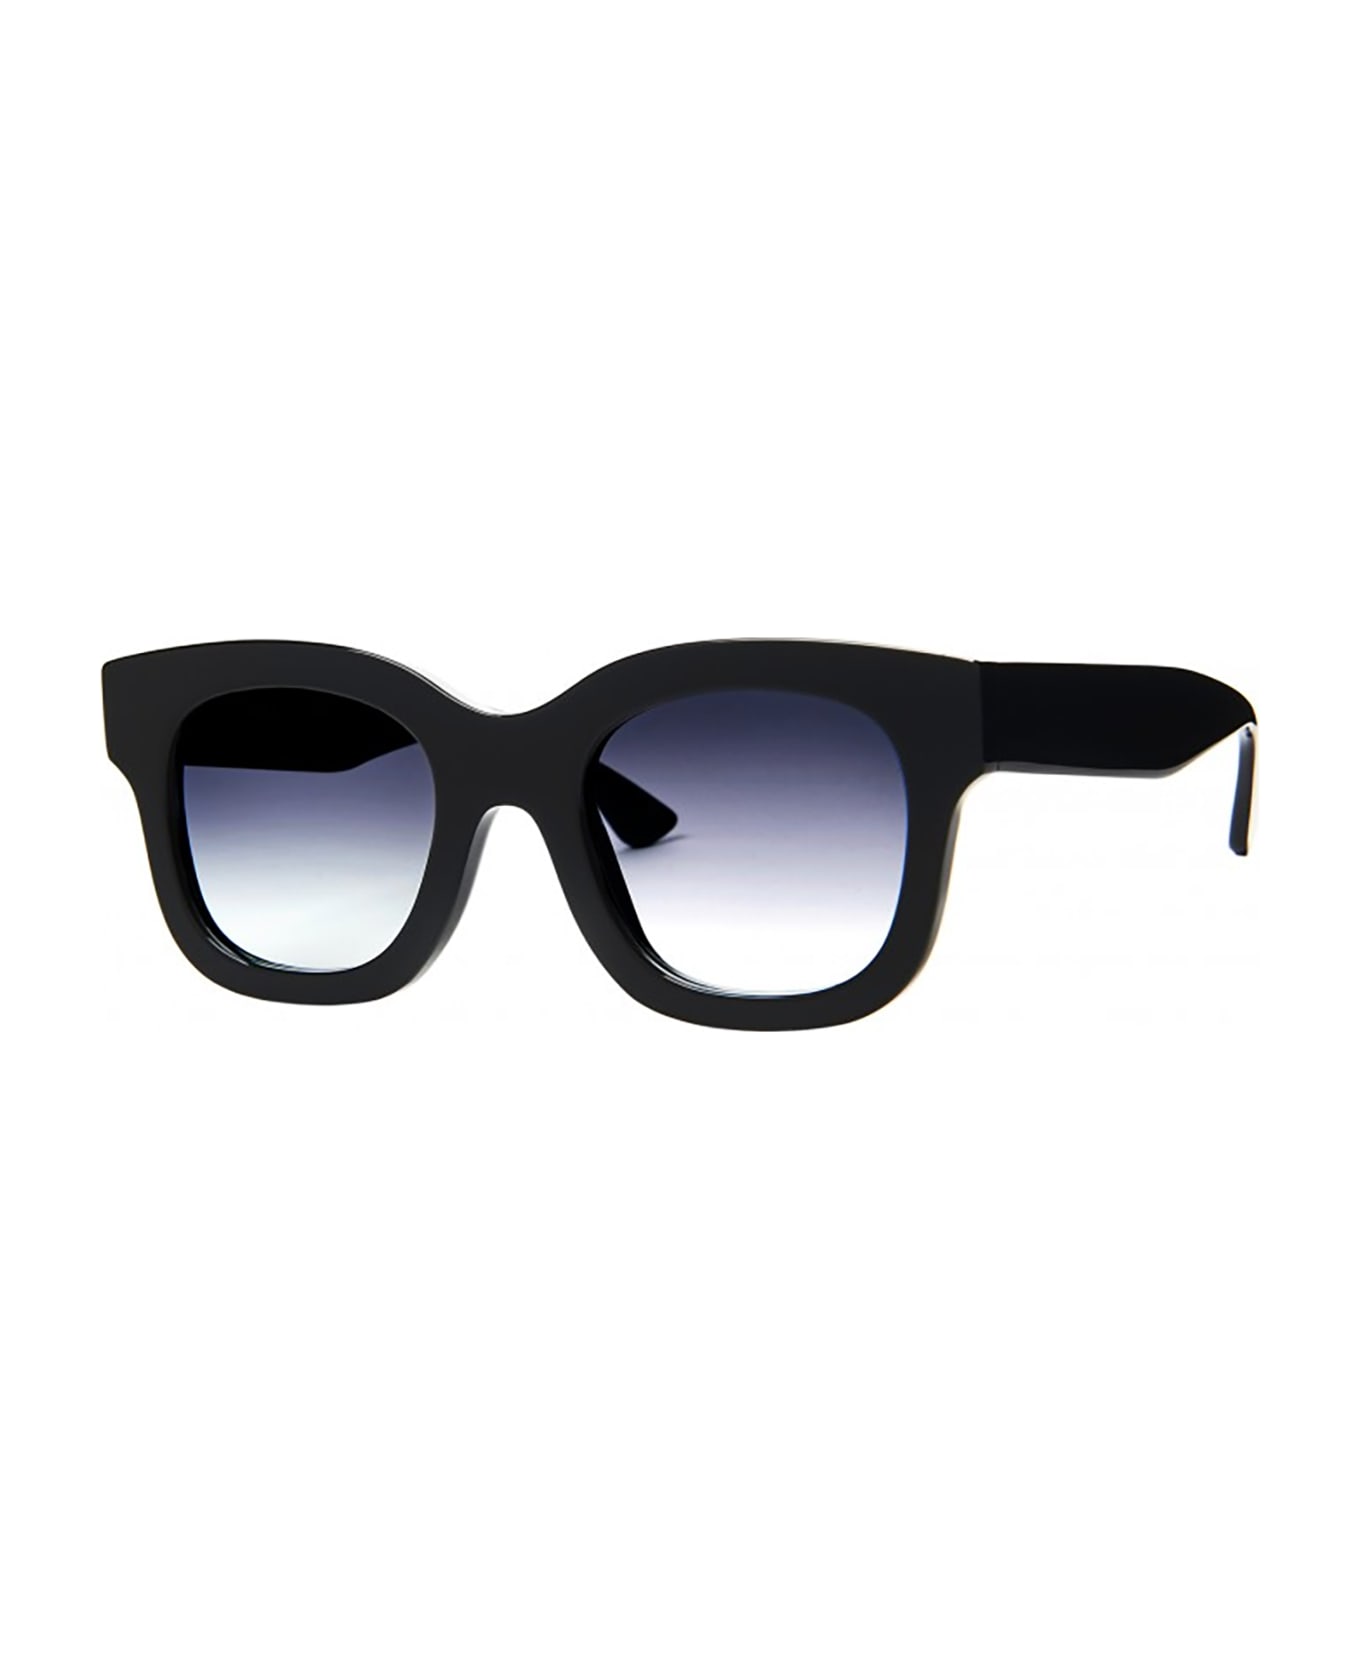 Thierry Lasry UNICORNY Sunglasses サングラス